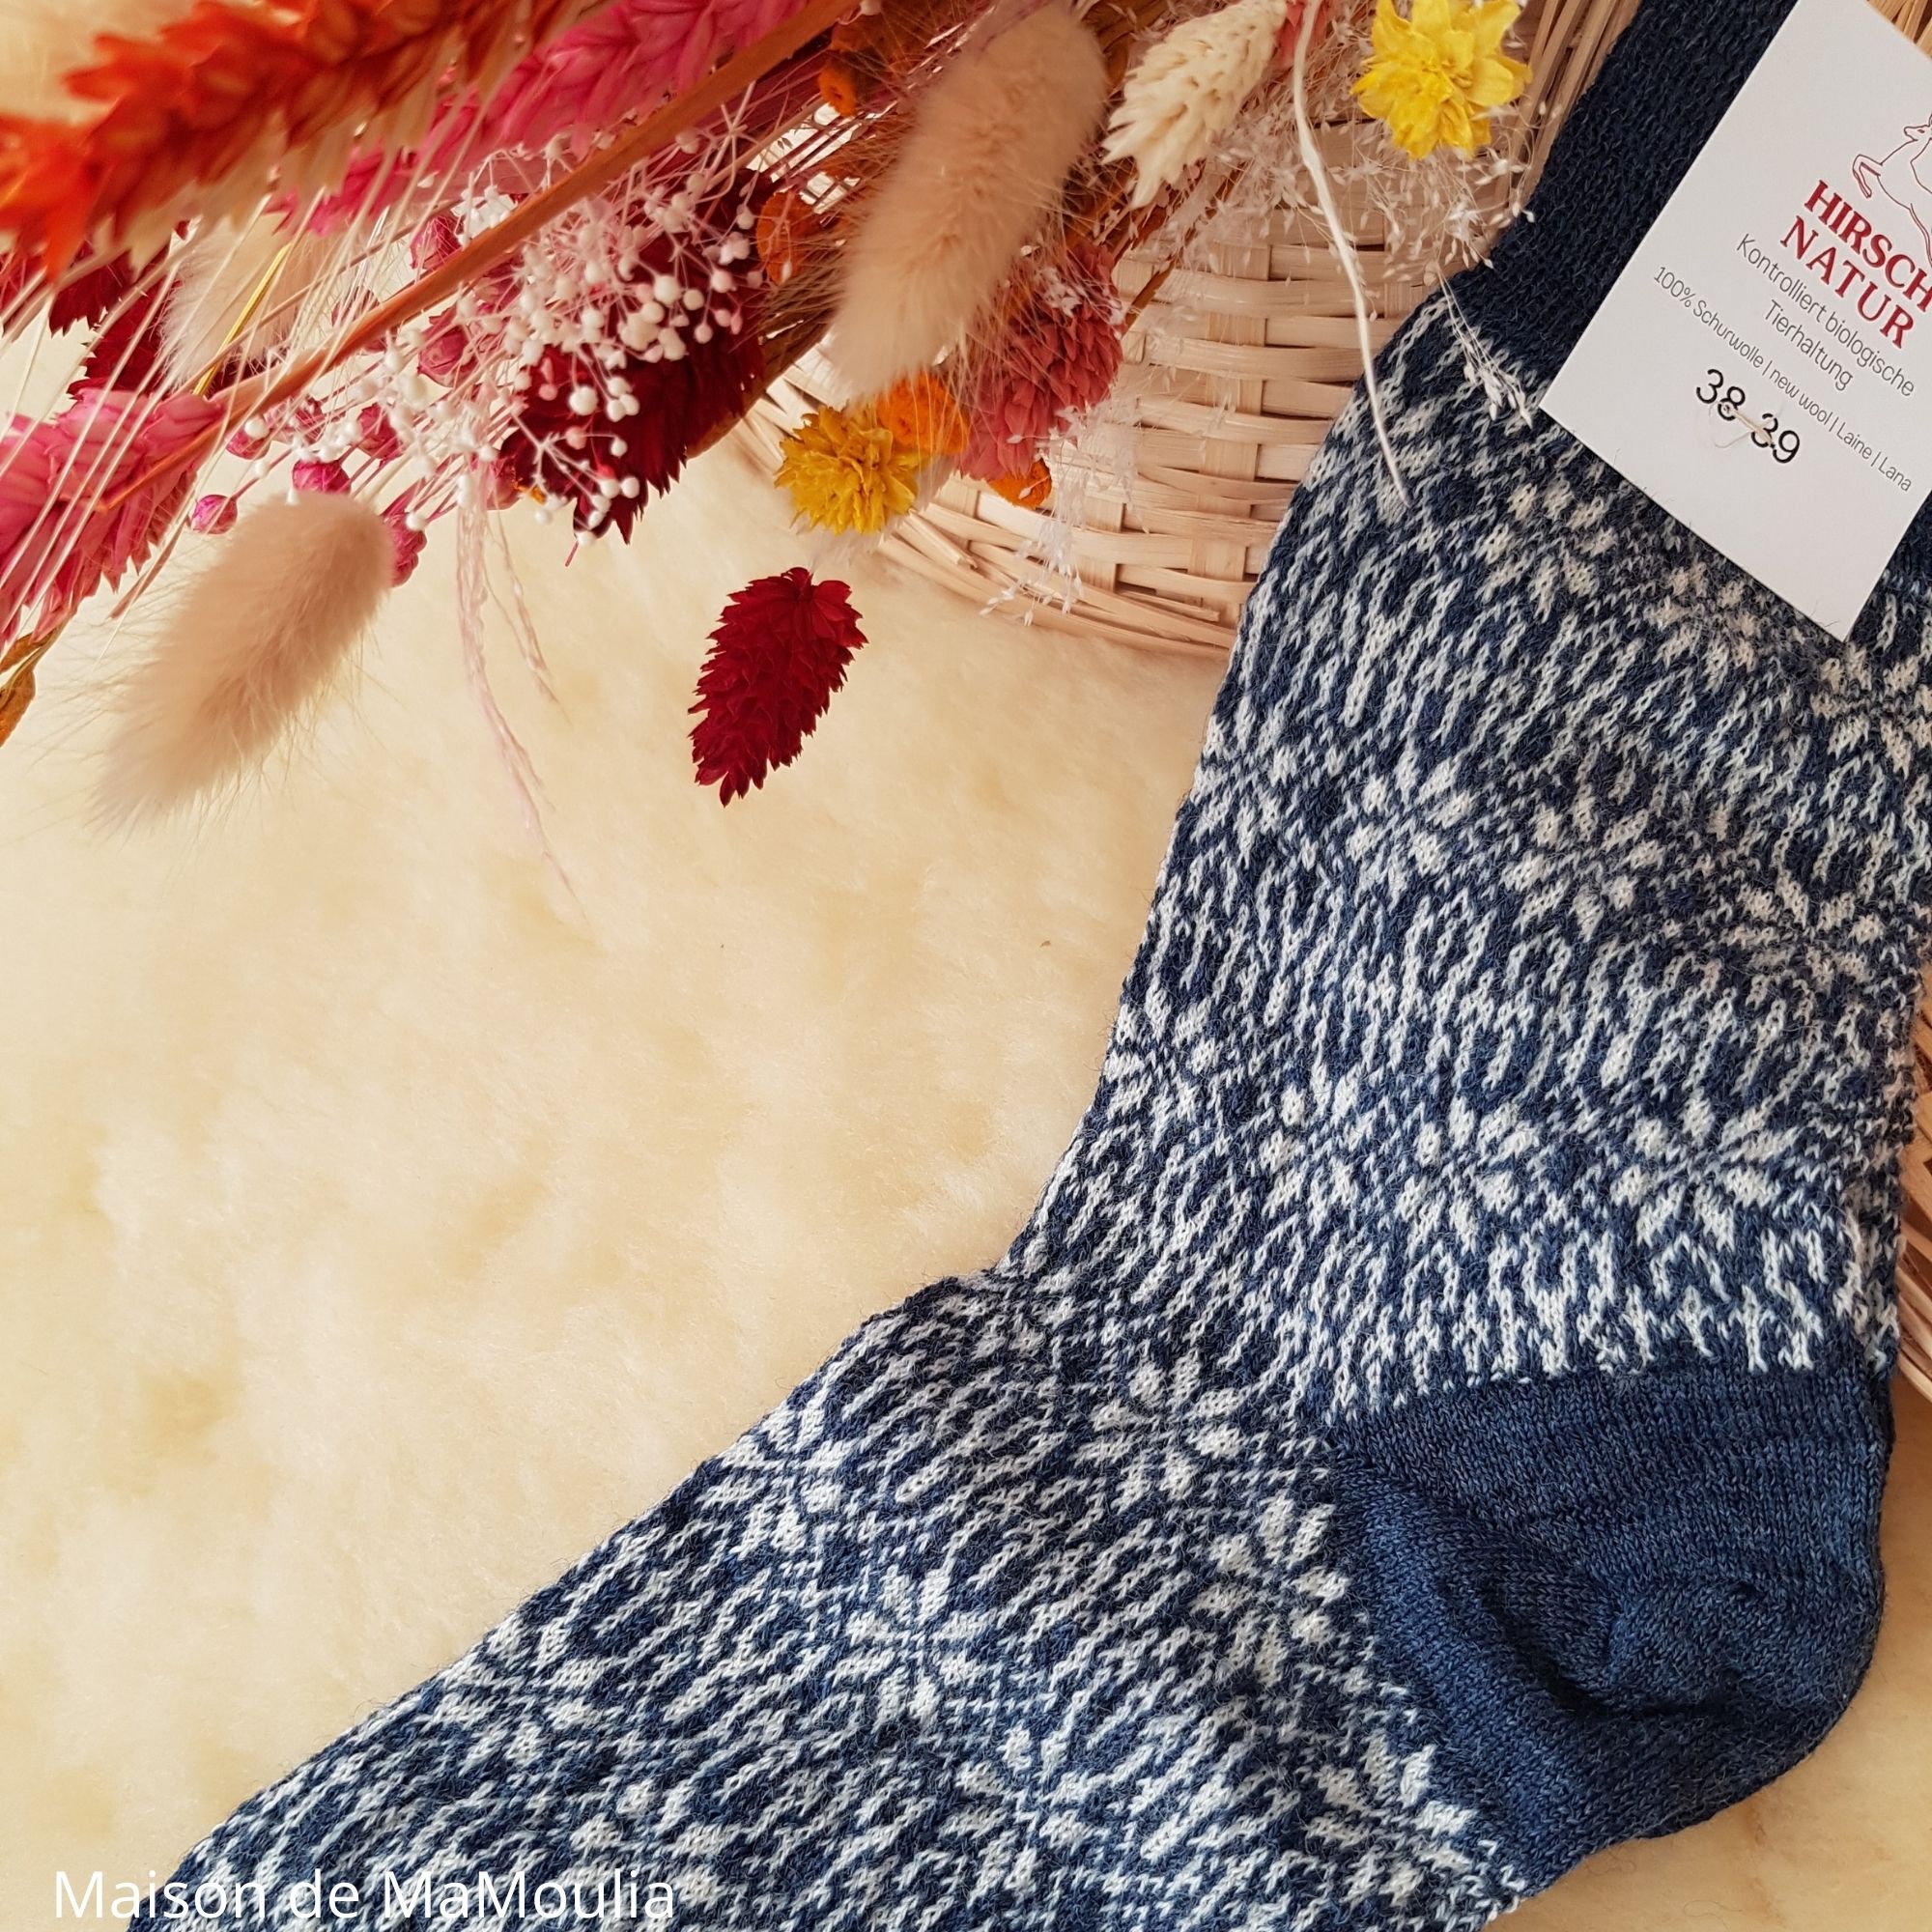 156-chaussettes-pure-laine-bio-ecologique-hirsch-natur-maison-de-mamoulia-norvegienne-adulte-bleu-fine-femme